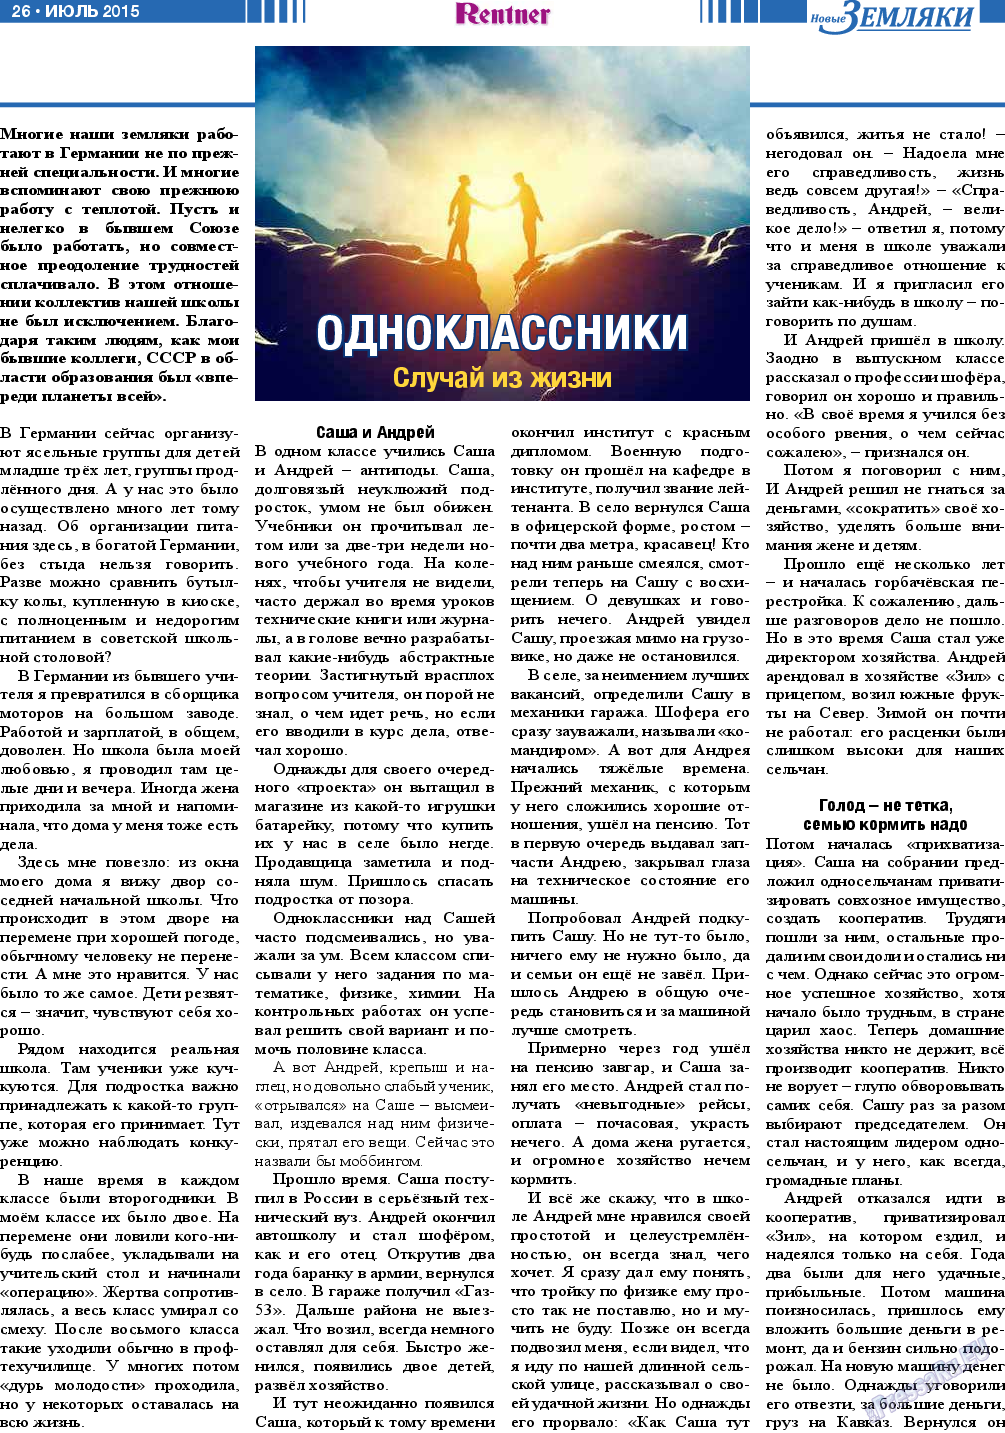 Новые Земляки, газета. 2015 №7 стр.26